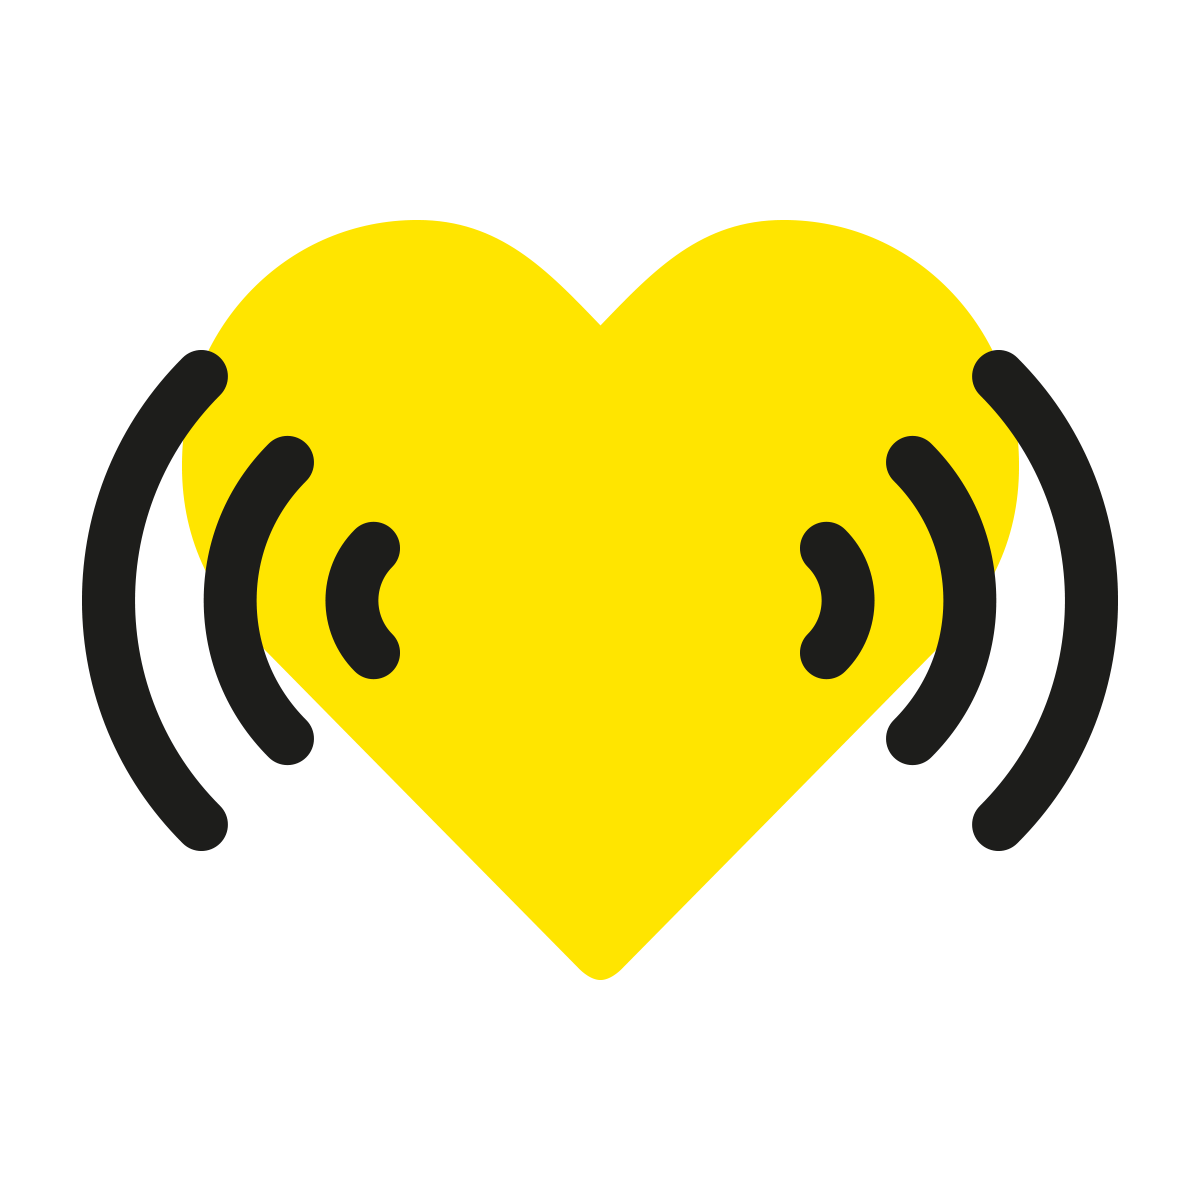 Logo für den Sound der BVG. Das gelbe Herz in der Mitte und rechts und links gebogene Linen.